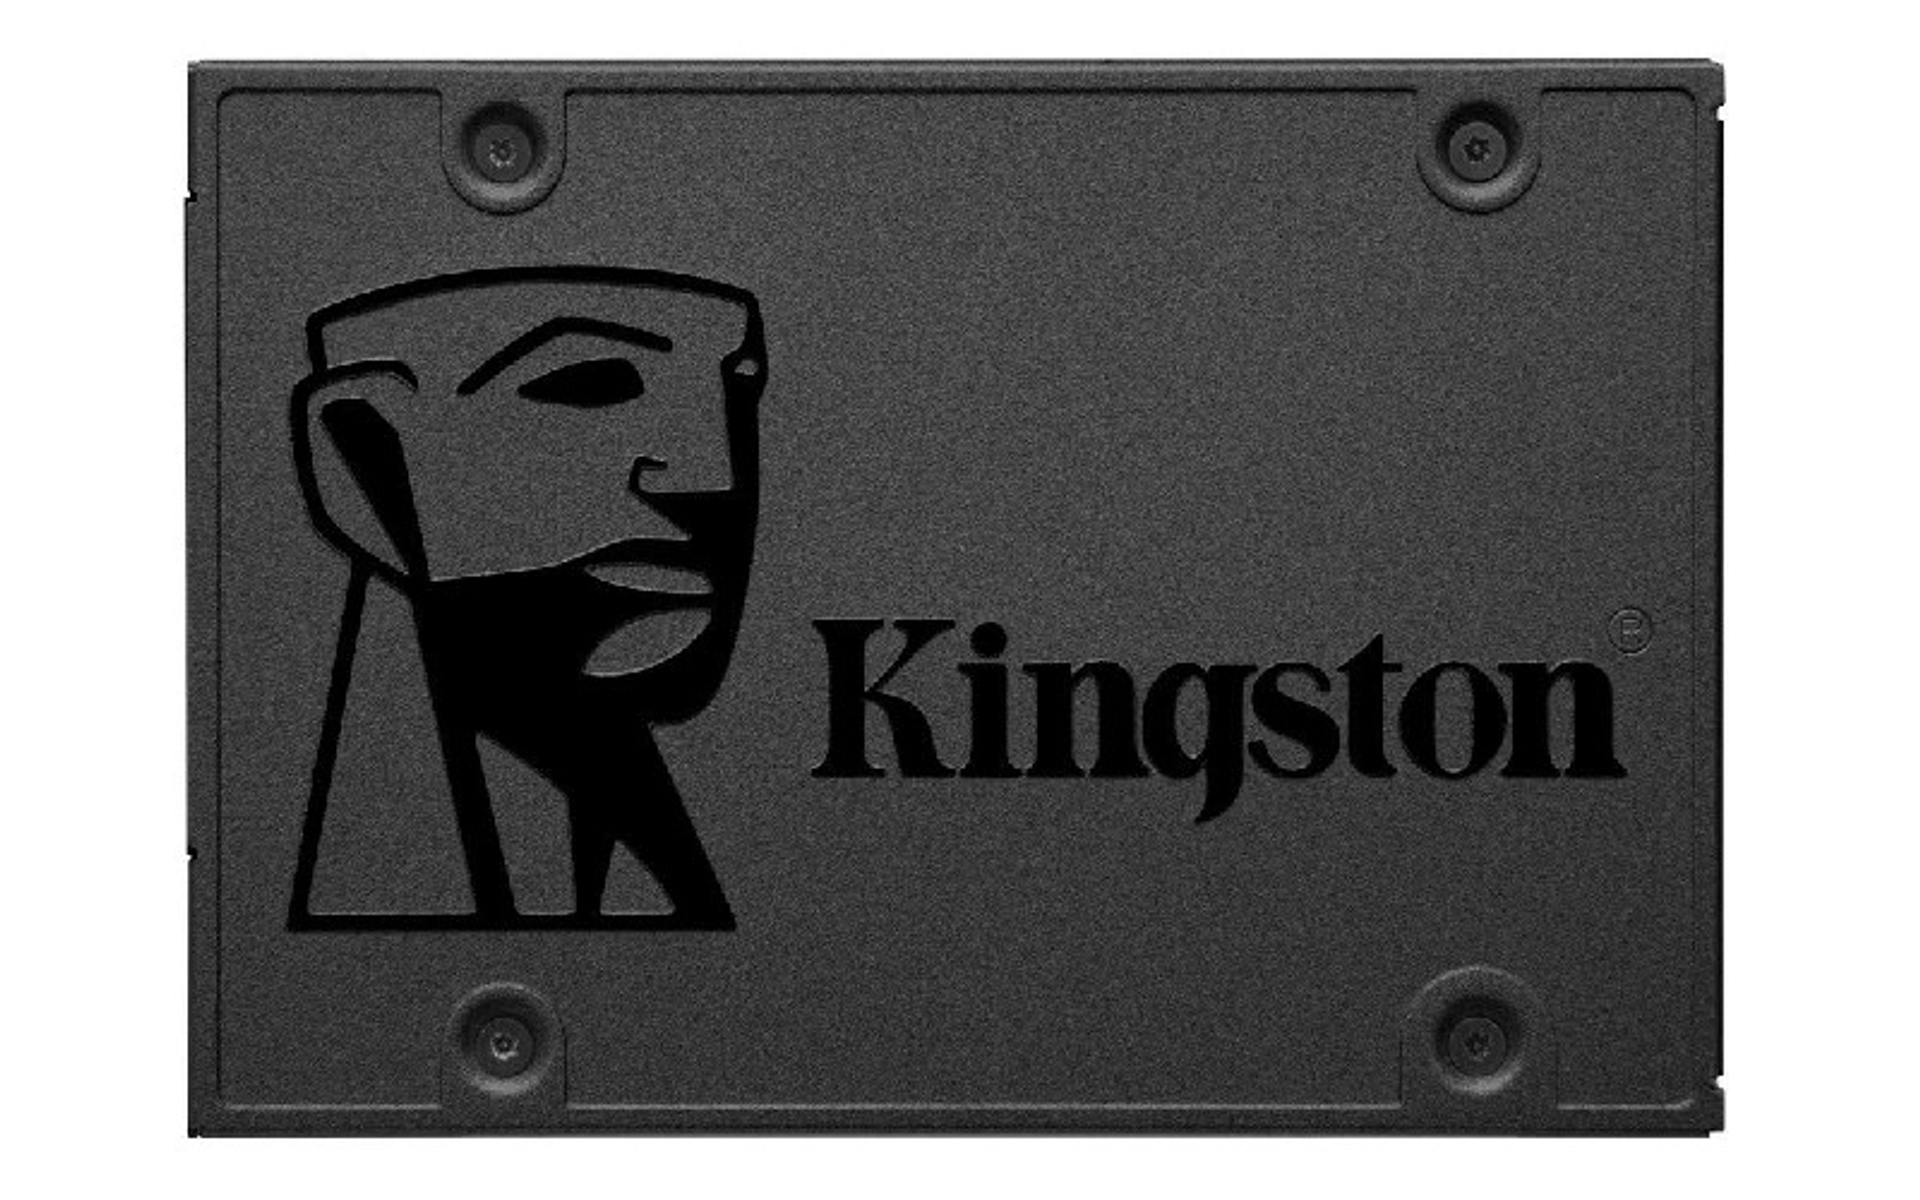 KINGSTON A400, 960 Zoll, GB, 2,5 SSD, intern